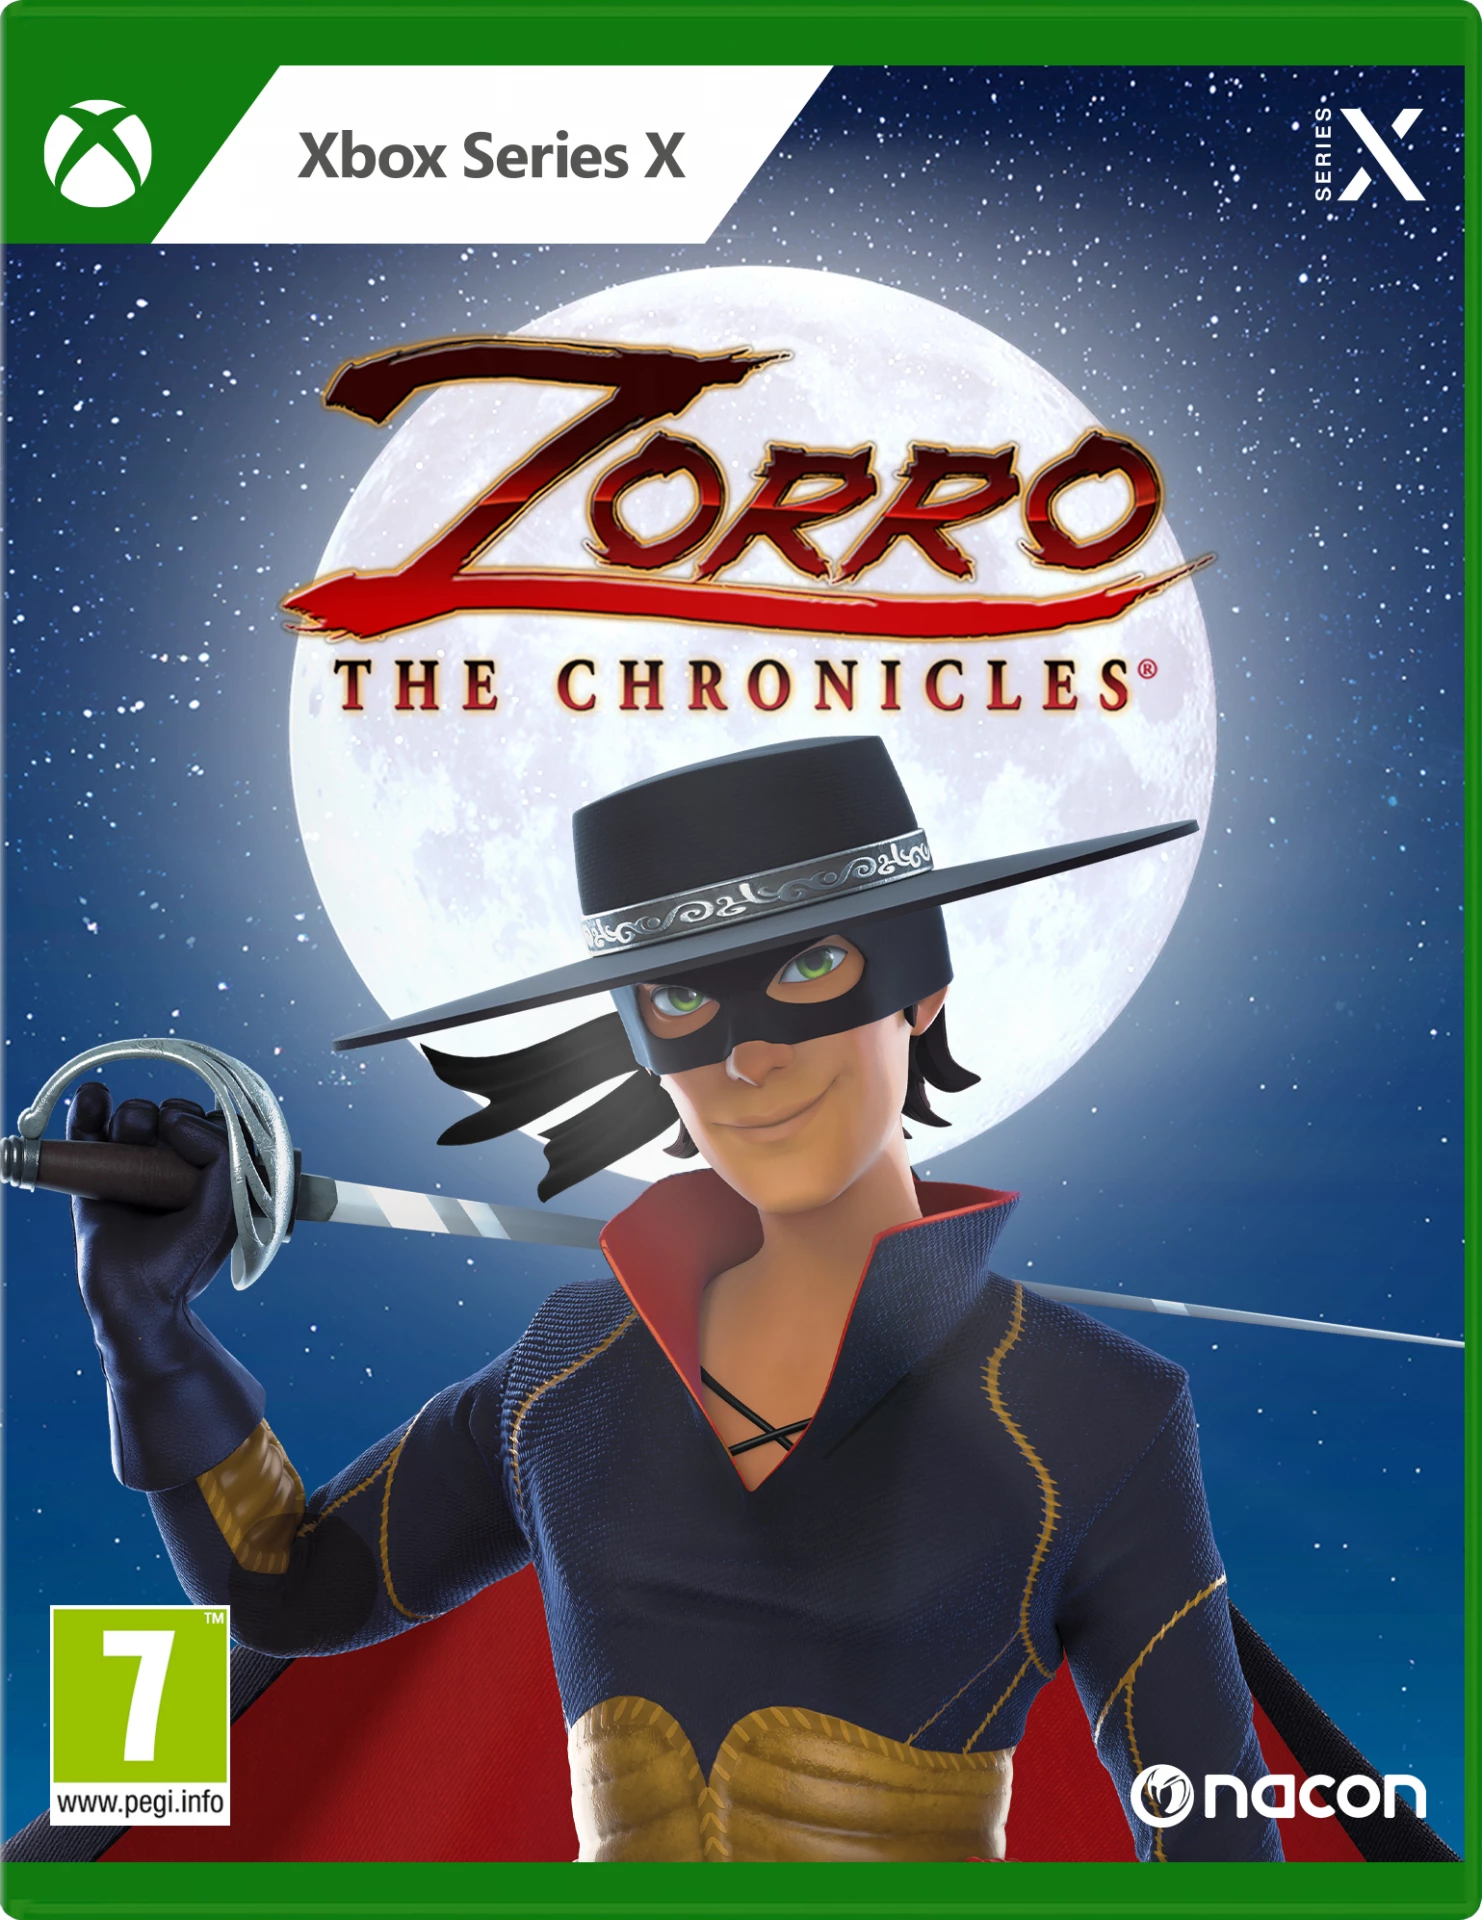 Zorro the Chronicles (Xbox Series X), Nacon